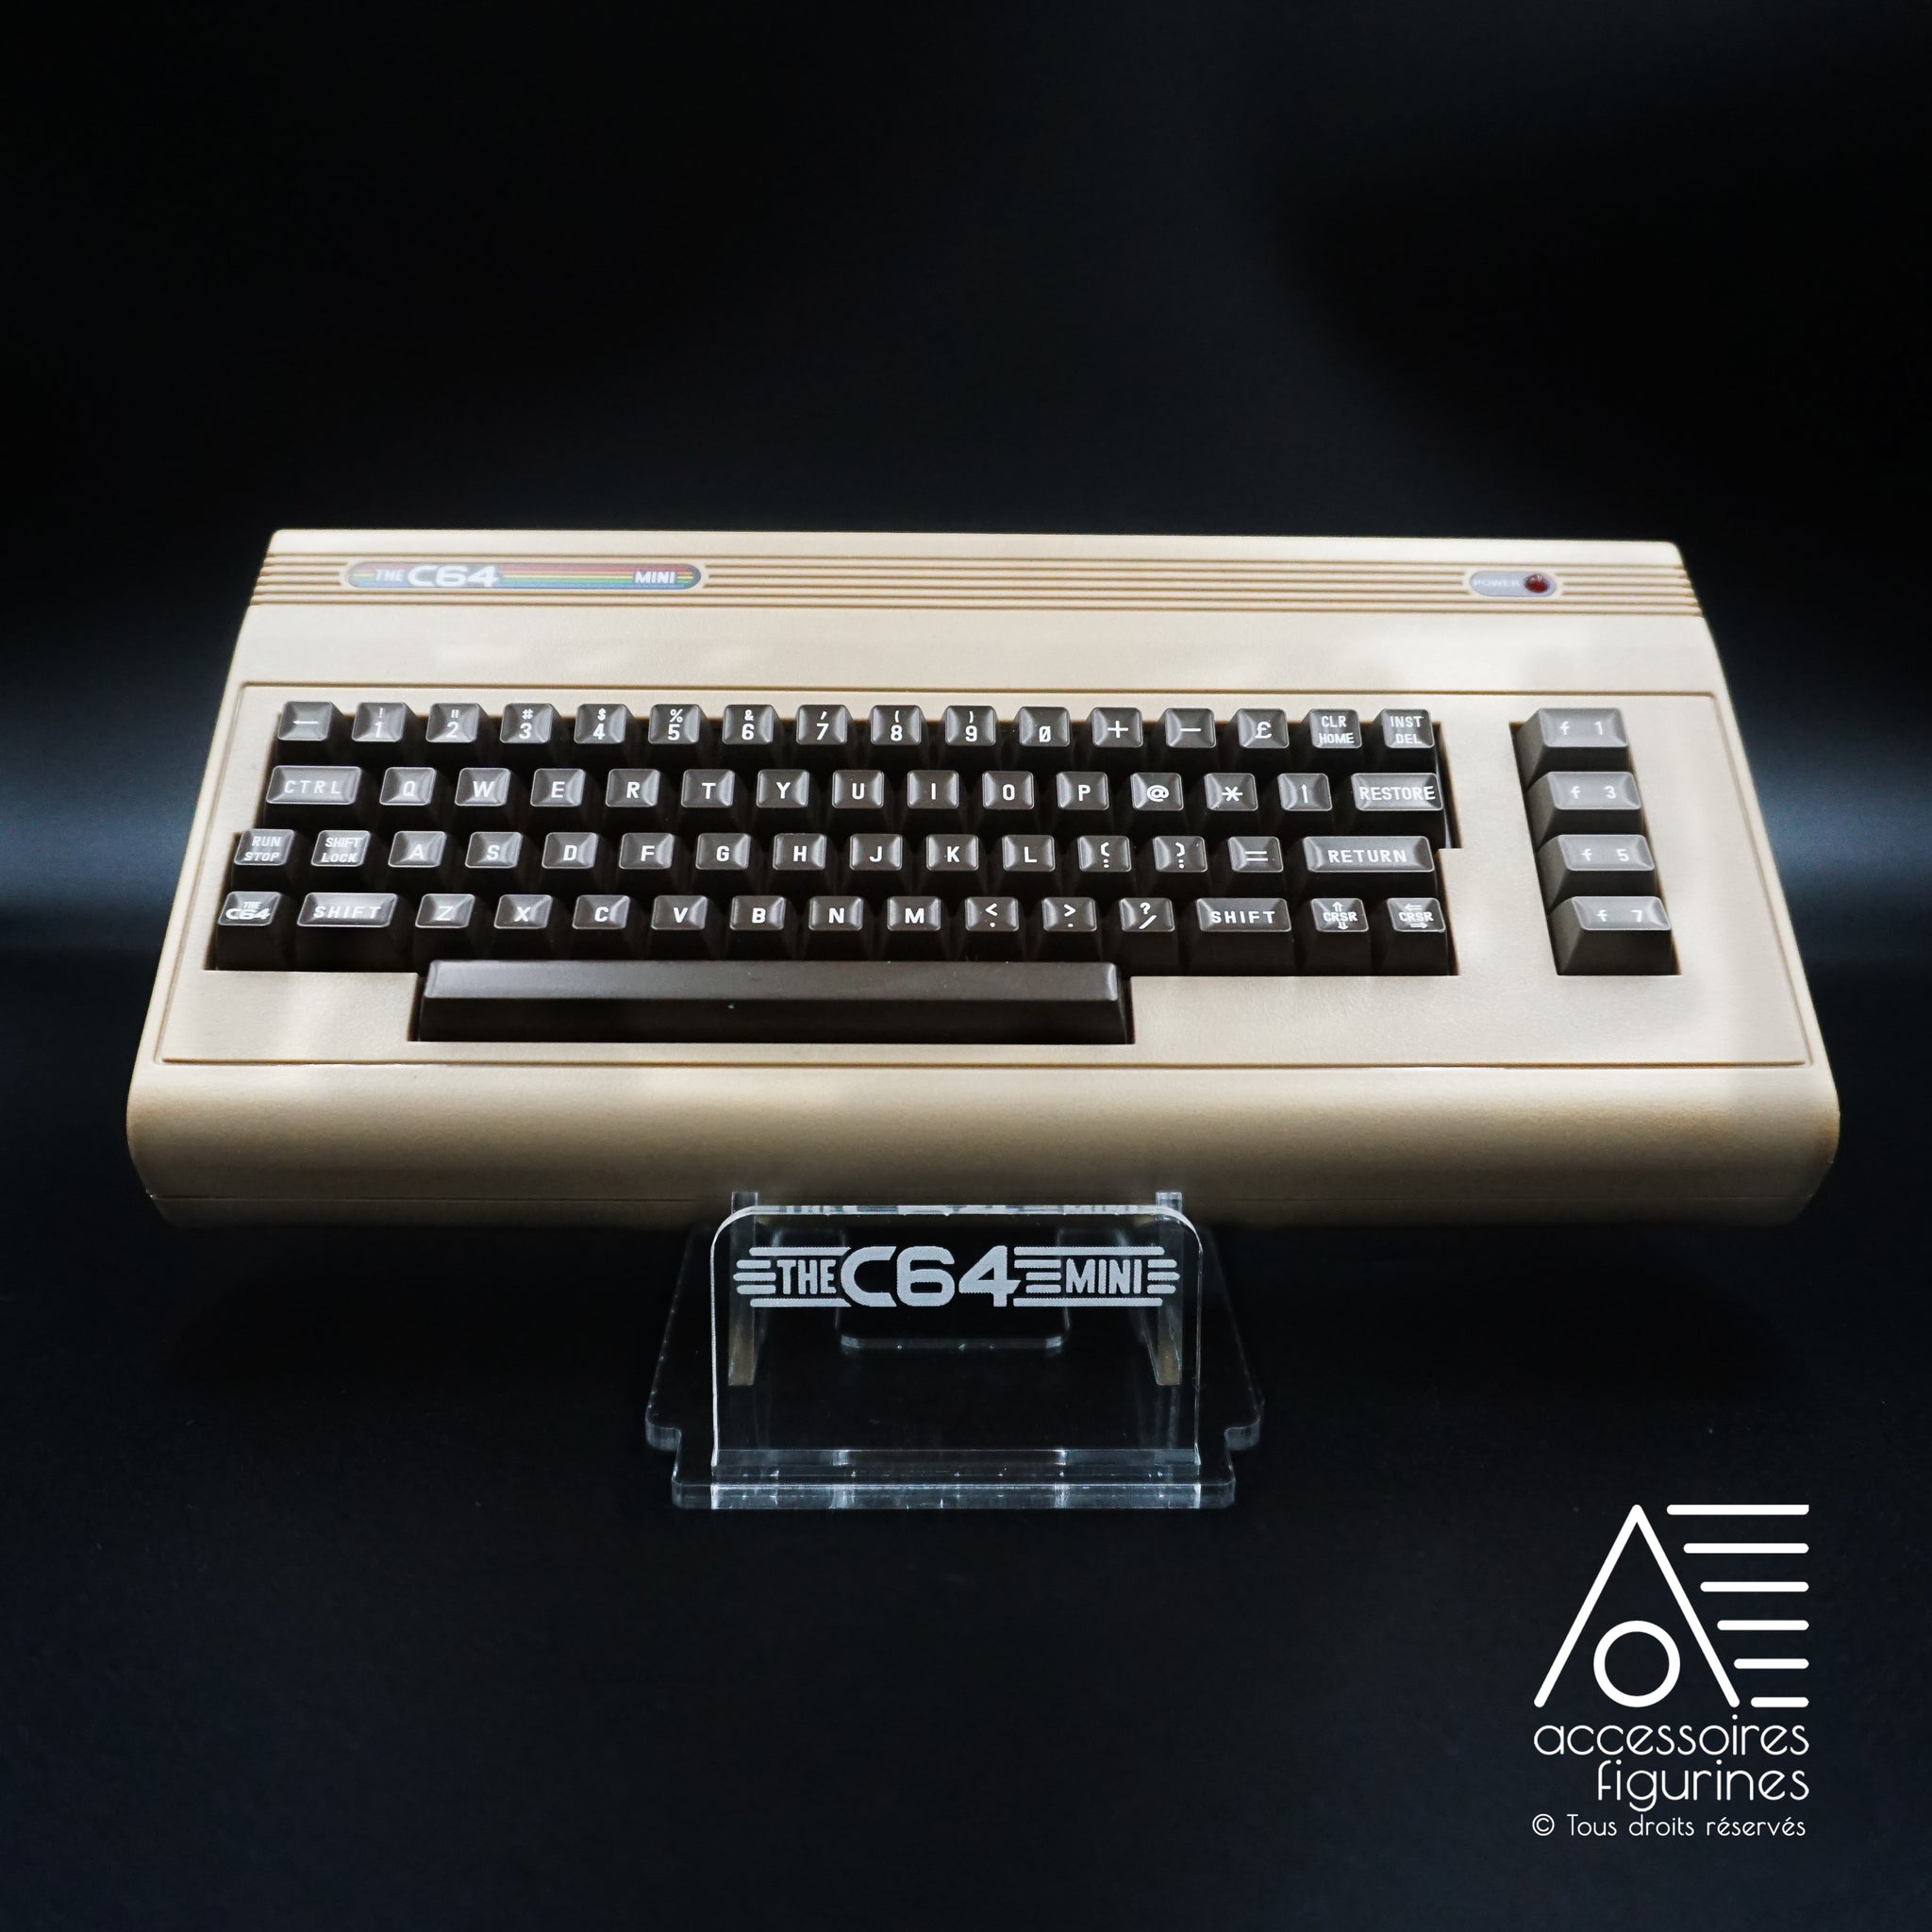 Soporta Commodore64 mini